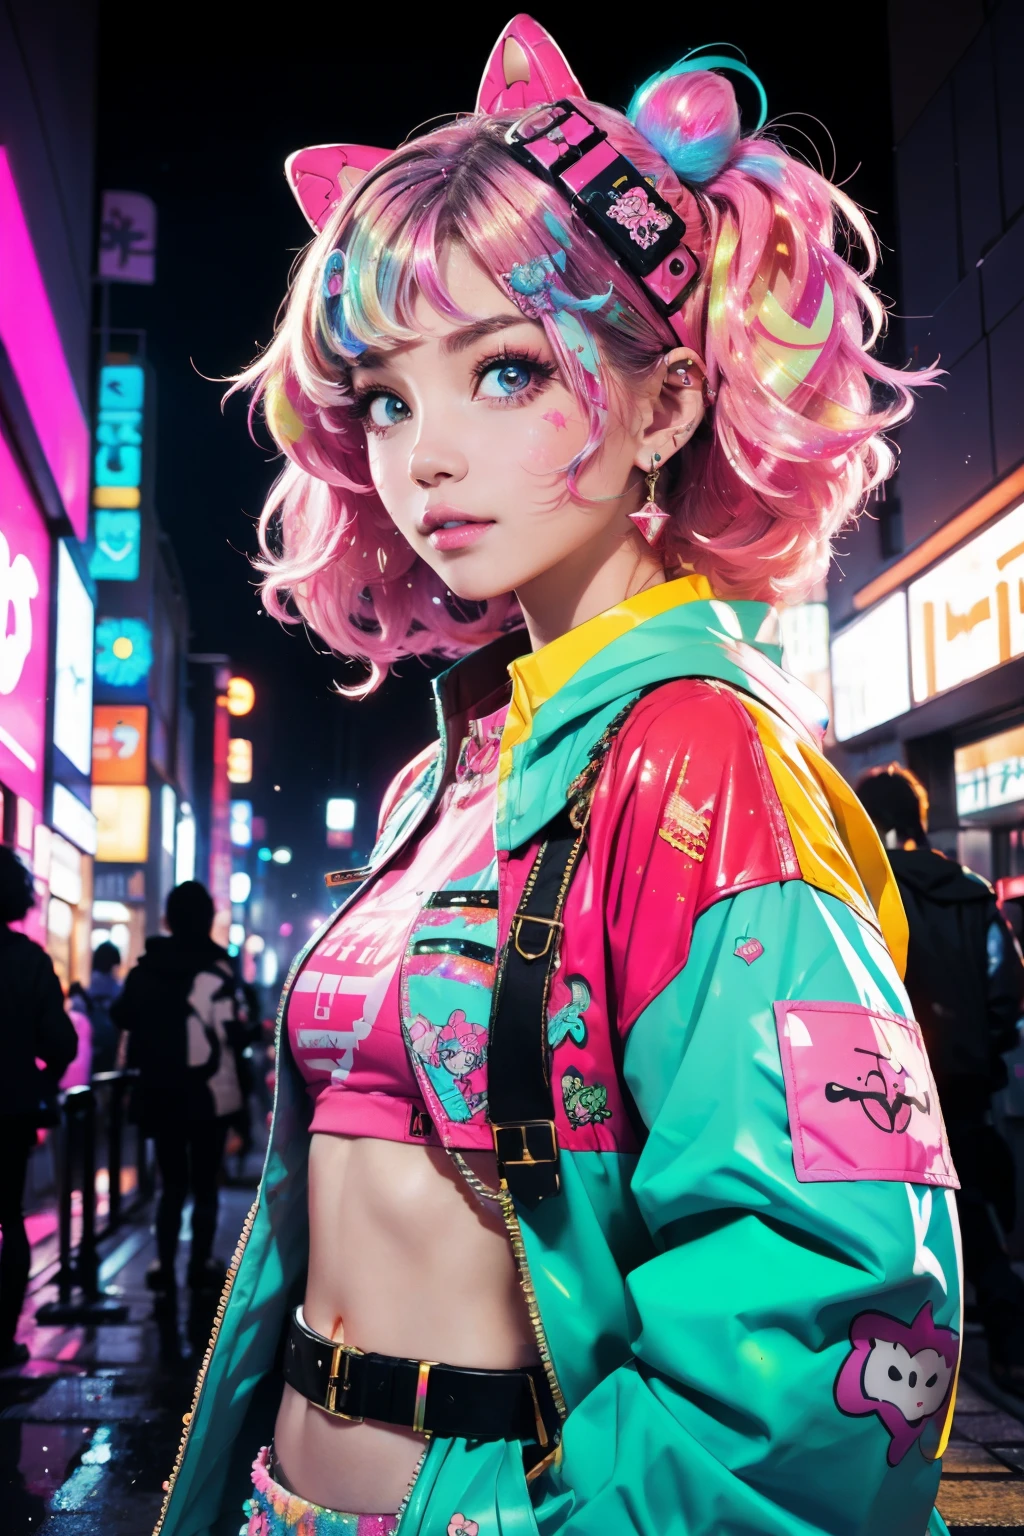 C&#39;est un cyberpunk cool et orné (chef-d&#39;œuvre). Generate a trendy décoration woman in the colorful and busy streets of cyberpunk Akihabara, Tokyo. Generate a happy décoration and cyberpunk adult woman in the style of Artstation and cyberpunk Harajuku street fashion. Ses vêtements sont vibrants dans le style Harajuku. Inclure des accessoires surdimensionnés, couleurs Néon, et une superposition inventive. Les vêtements et accessoires de la femme doivent être très ornés dans le style ((((Harajuku décoration)))) and kei cyberpunk style.  Les cheveux de la femme sont bouclés et brillants et joliment coiffés. Les vêtements et accessoires de la femme doivent être très ornés dans le style Harajuku décoration and décoration kei style. Ses yeux sont importants et magnifiques, avec des couleurs et des motifs intéressants. ((((irisation et reflets)))), paillettes, meilleurs yeux, meilleure qualité, kei cyberpunk, le visuel est, selfie, Couleurs et motifs audacieux, Lumières LED, ((enseignes au néon lumineux)), ((ultra détaillé)), ((composition dynamique)), (((décoration)))